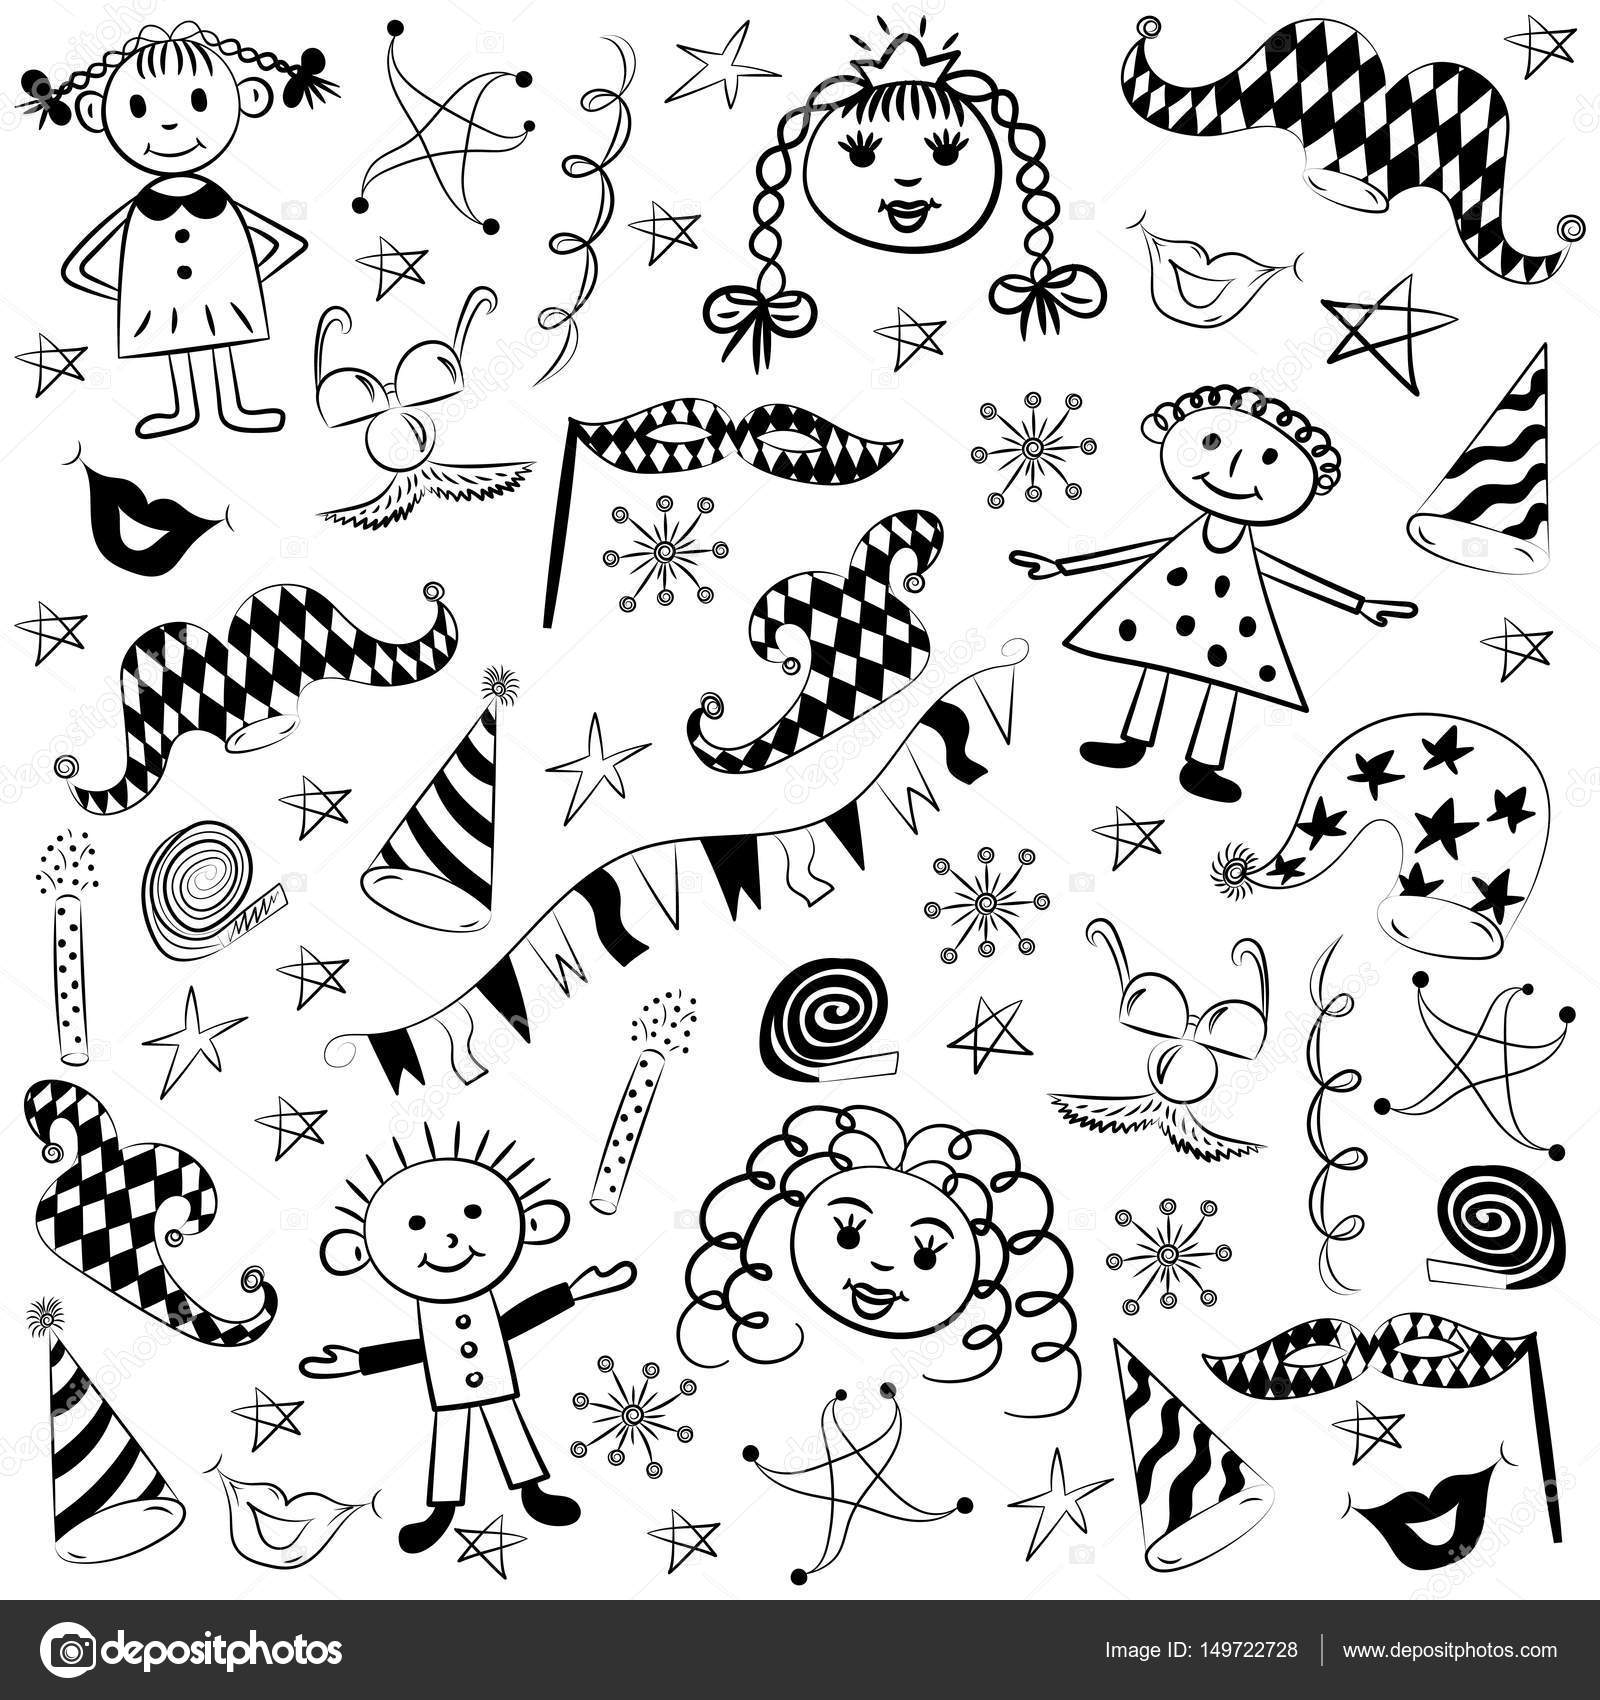 Simboli del partito colorati disegnati a mano e bambini felici Disegni di bambini di elementi